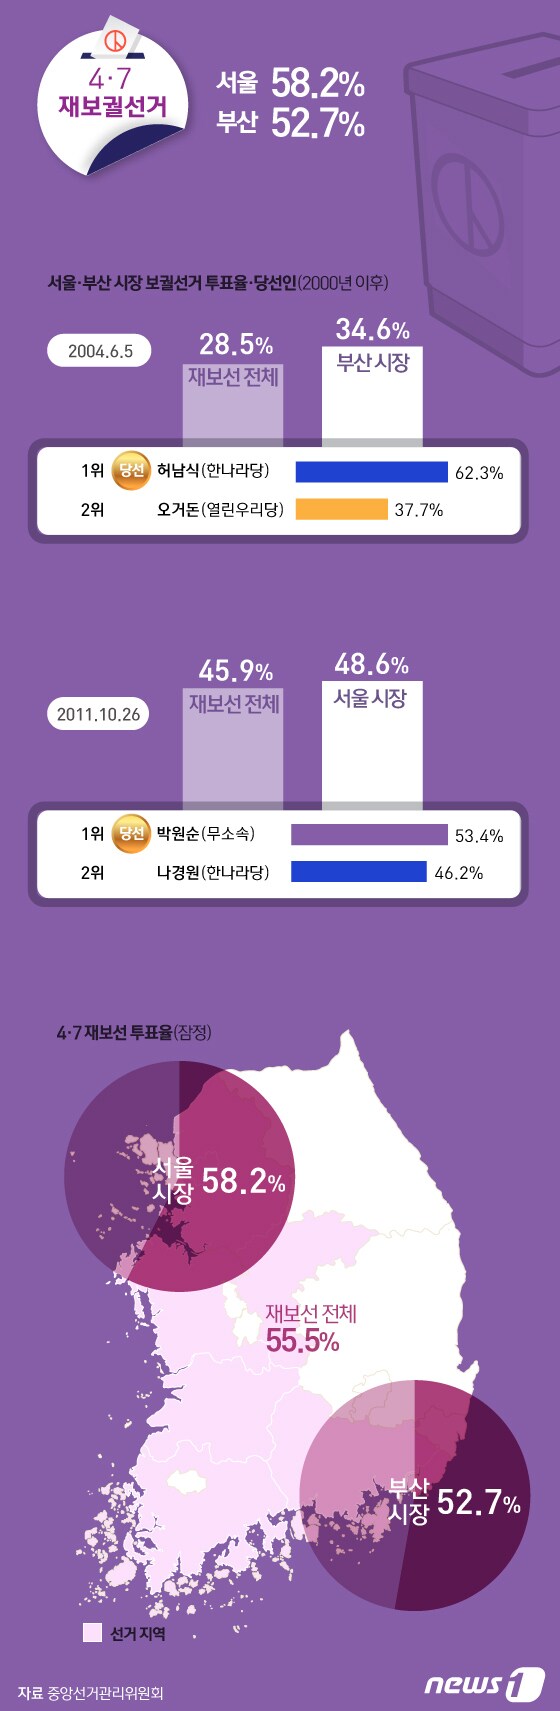 [그래픽뉴스] 4.7 재보선 서울 58.2%, 부산 52.7%